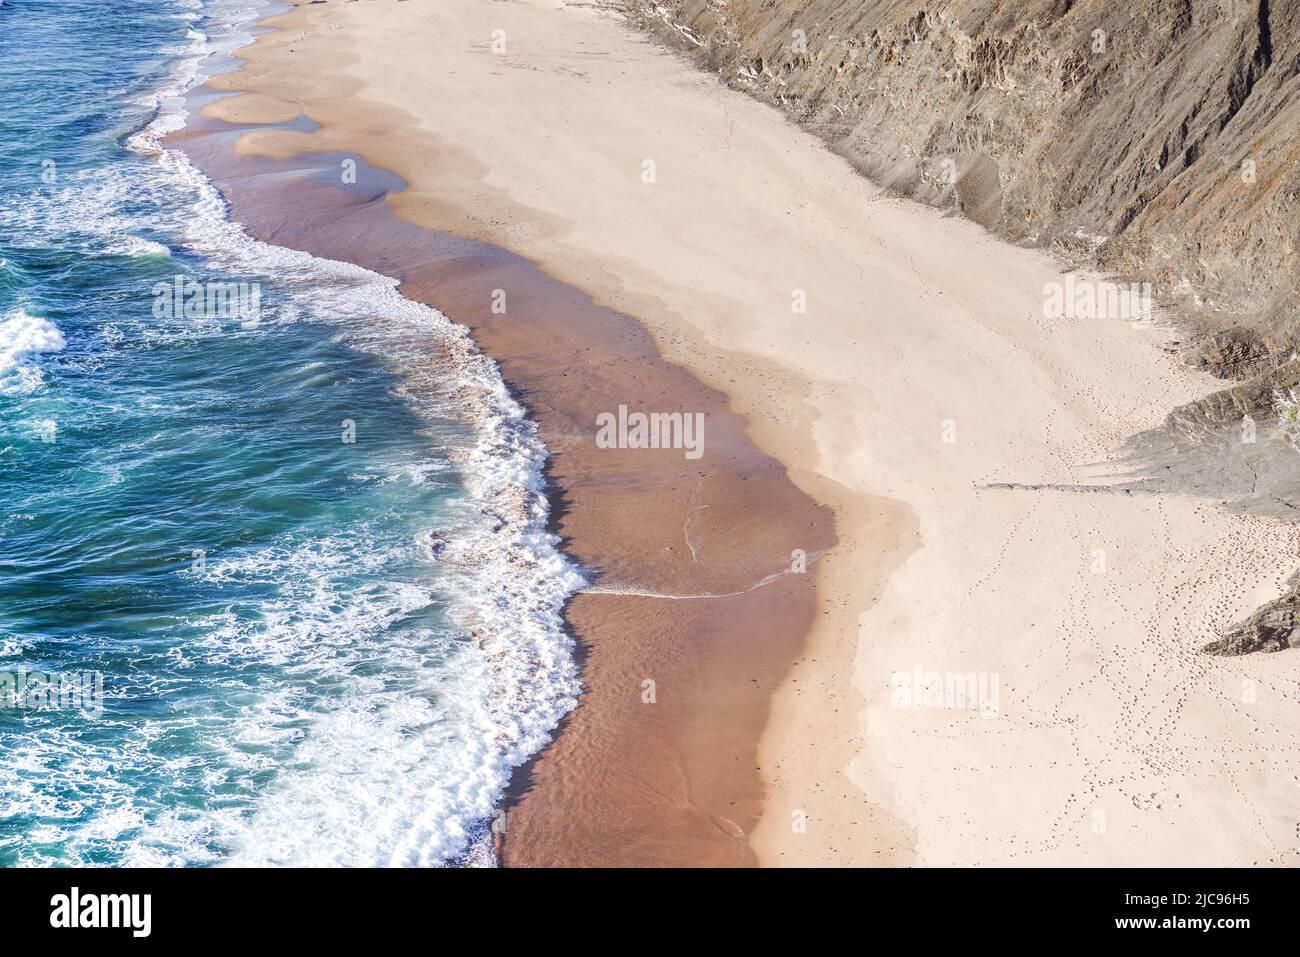 Verschiedene Sandtöne schaffen einen auffallenden Kontrast bei der rückläufigen Flut - Praia de Fateixa, Algarve, Portugal Stockfoto